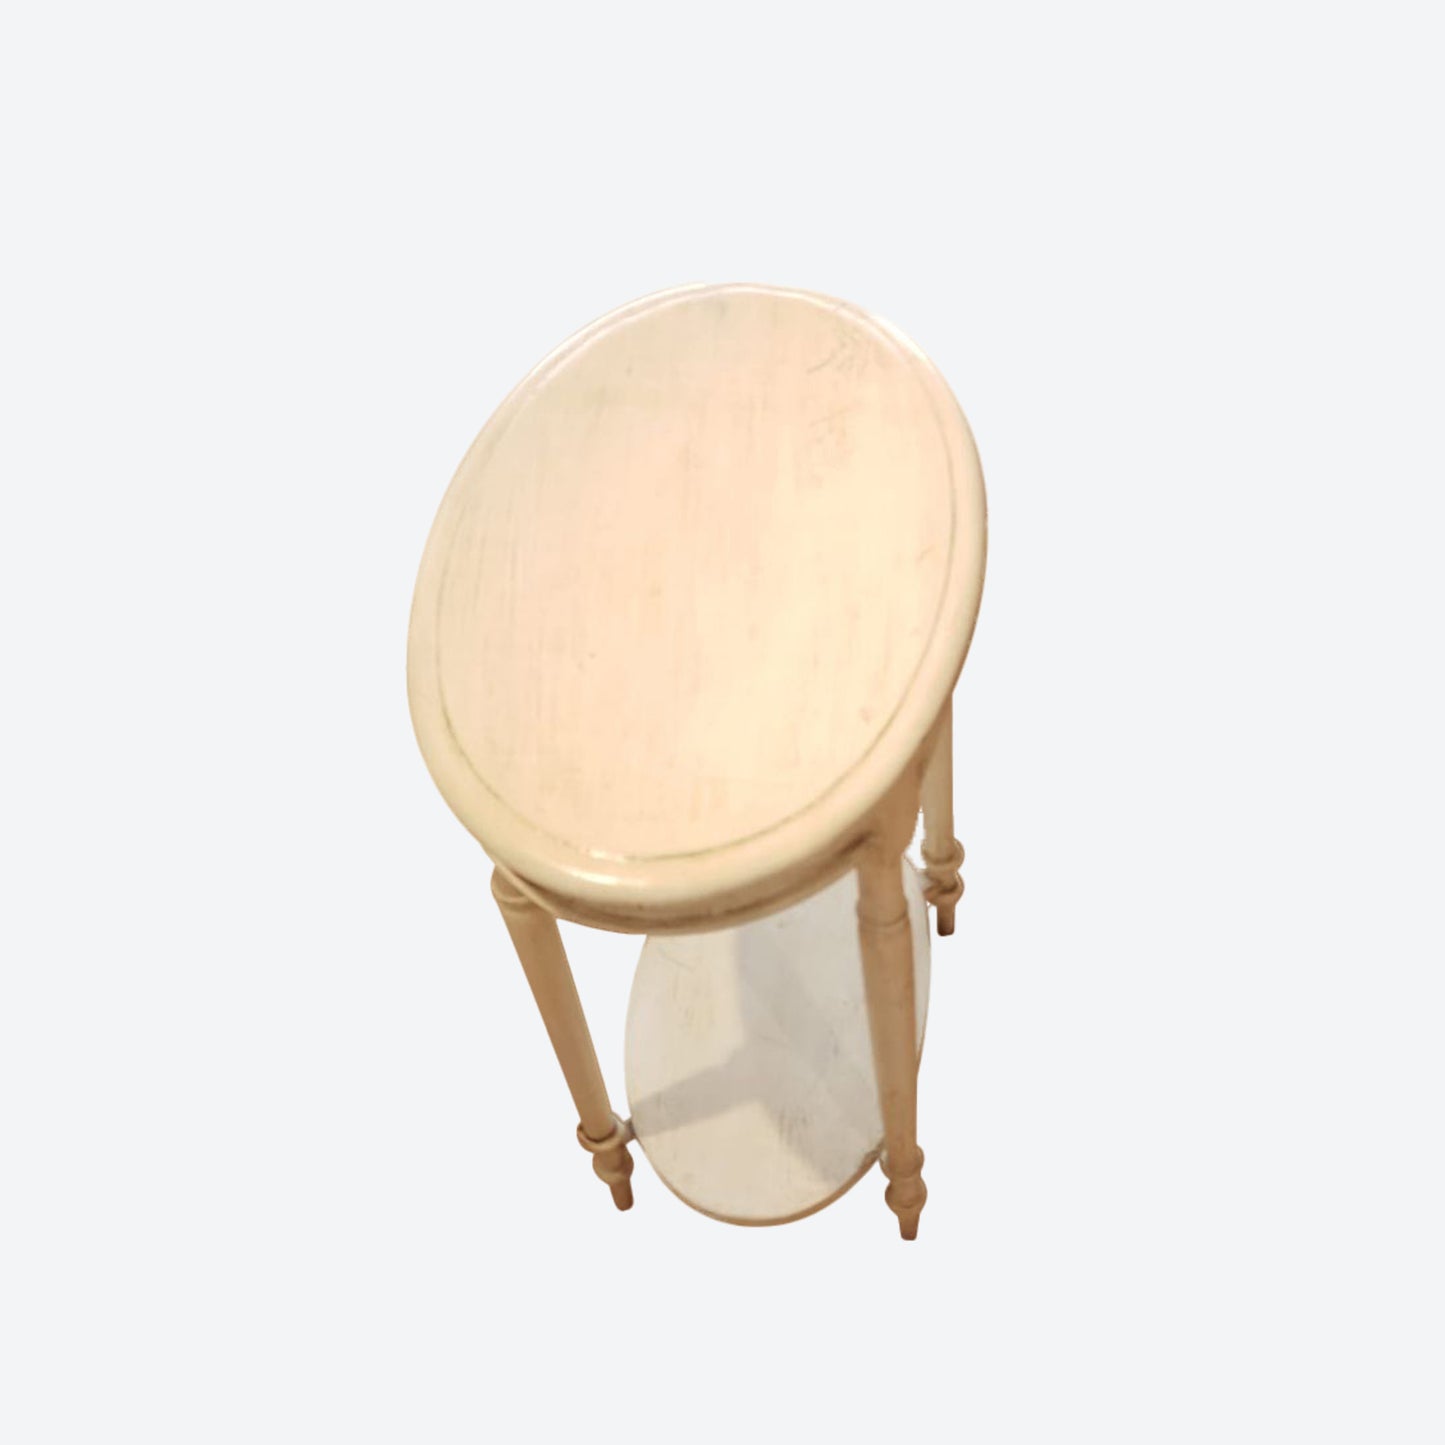 Round Tabletop Cedar Wood Rustic Table [ White] -SK- SKU 1181